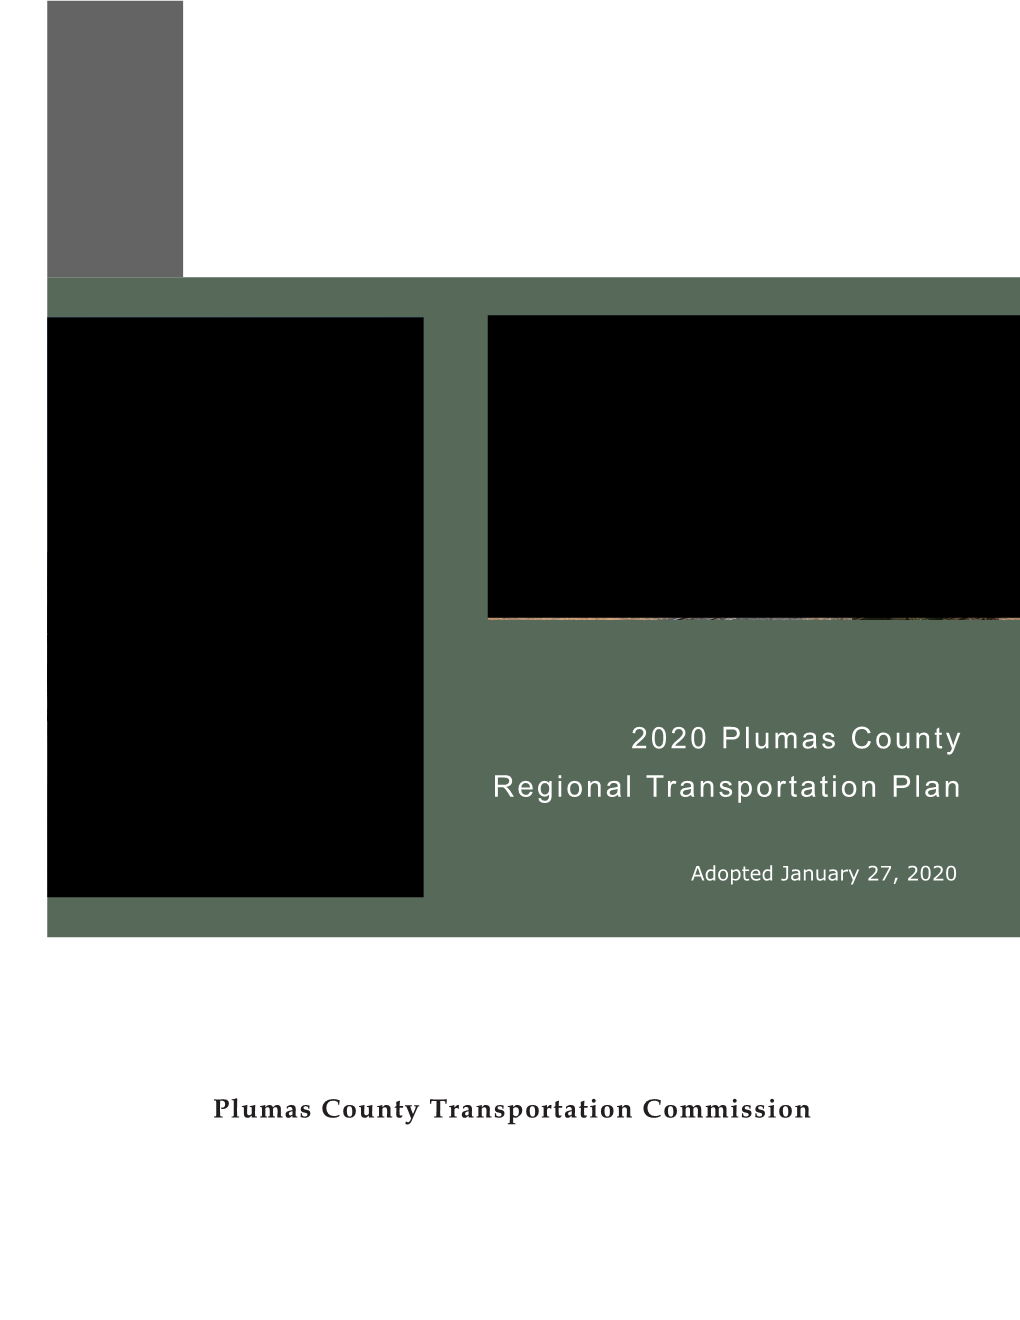 2020 Regional Transportation Plan